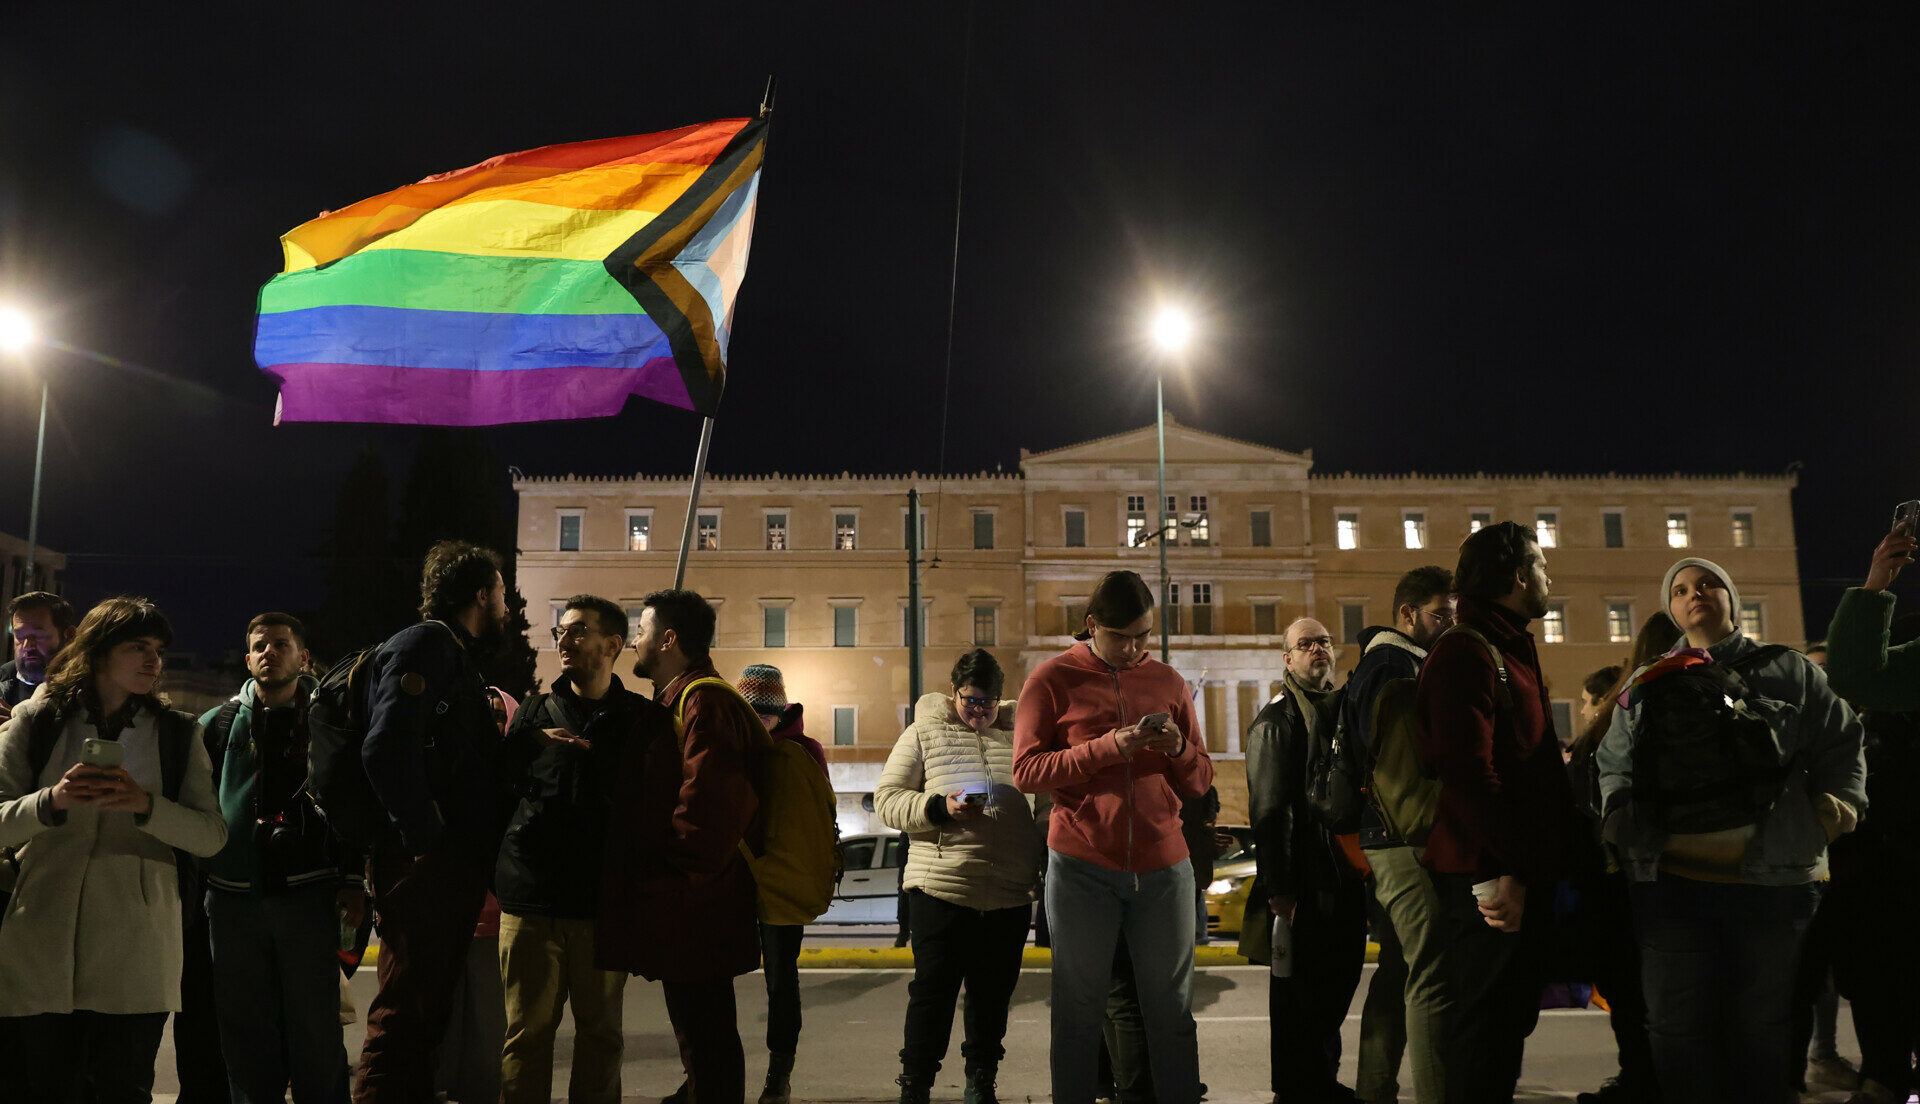 Συγκέντρωση ατόμων της ΛΟΑΤΚΙ+ κοινότητας υπέρ του νομοσχεδίου για την ισότητα στον γάμο © InTime